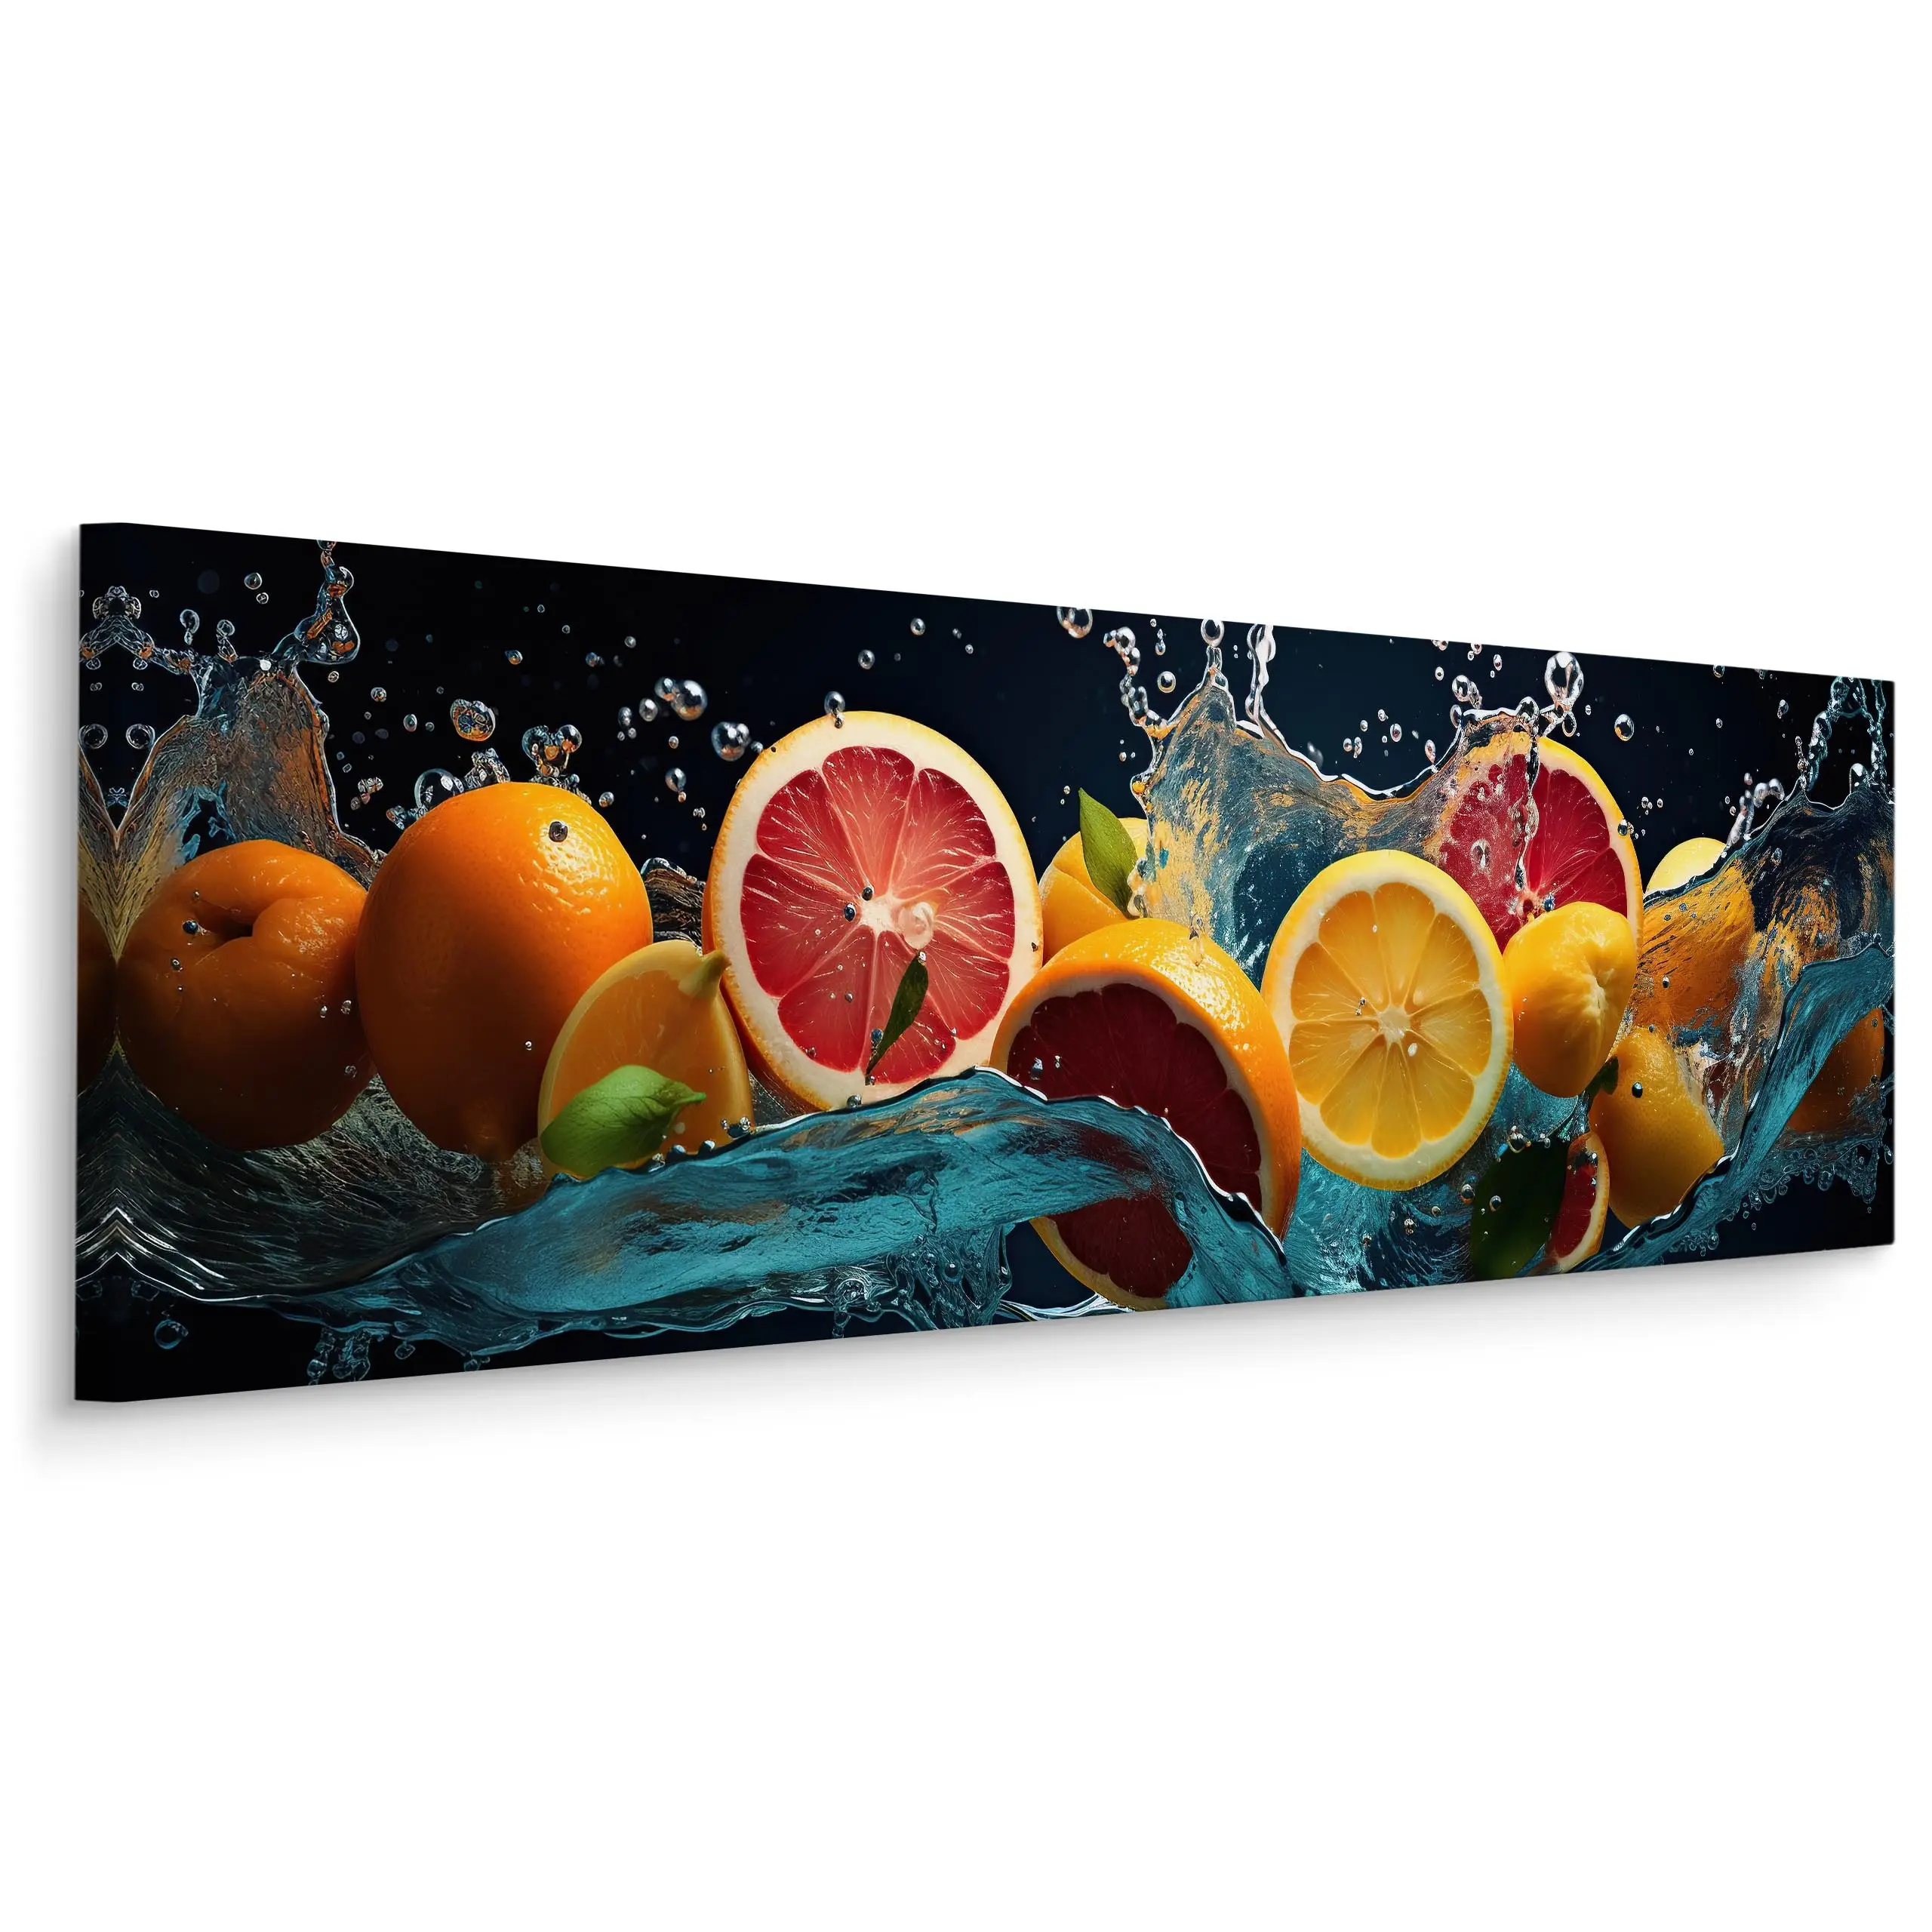 Panoramabild Zitrusfrucht-Erfrischung 3D